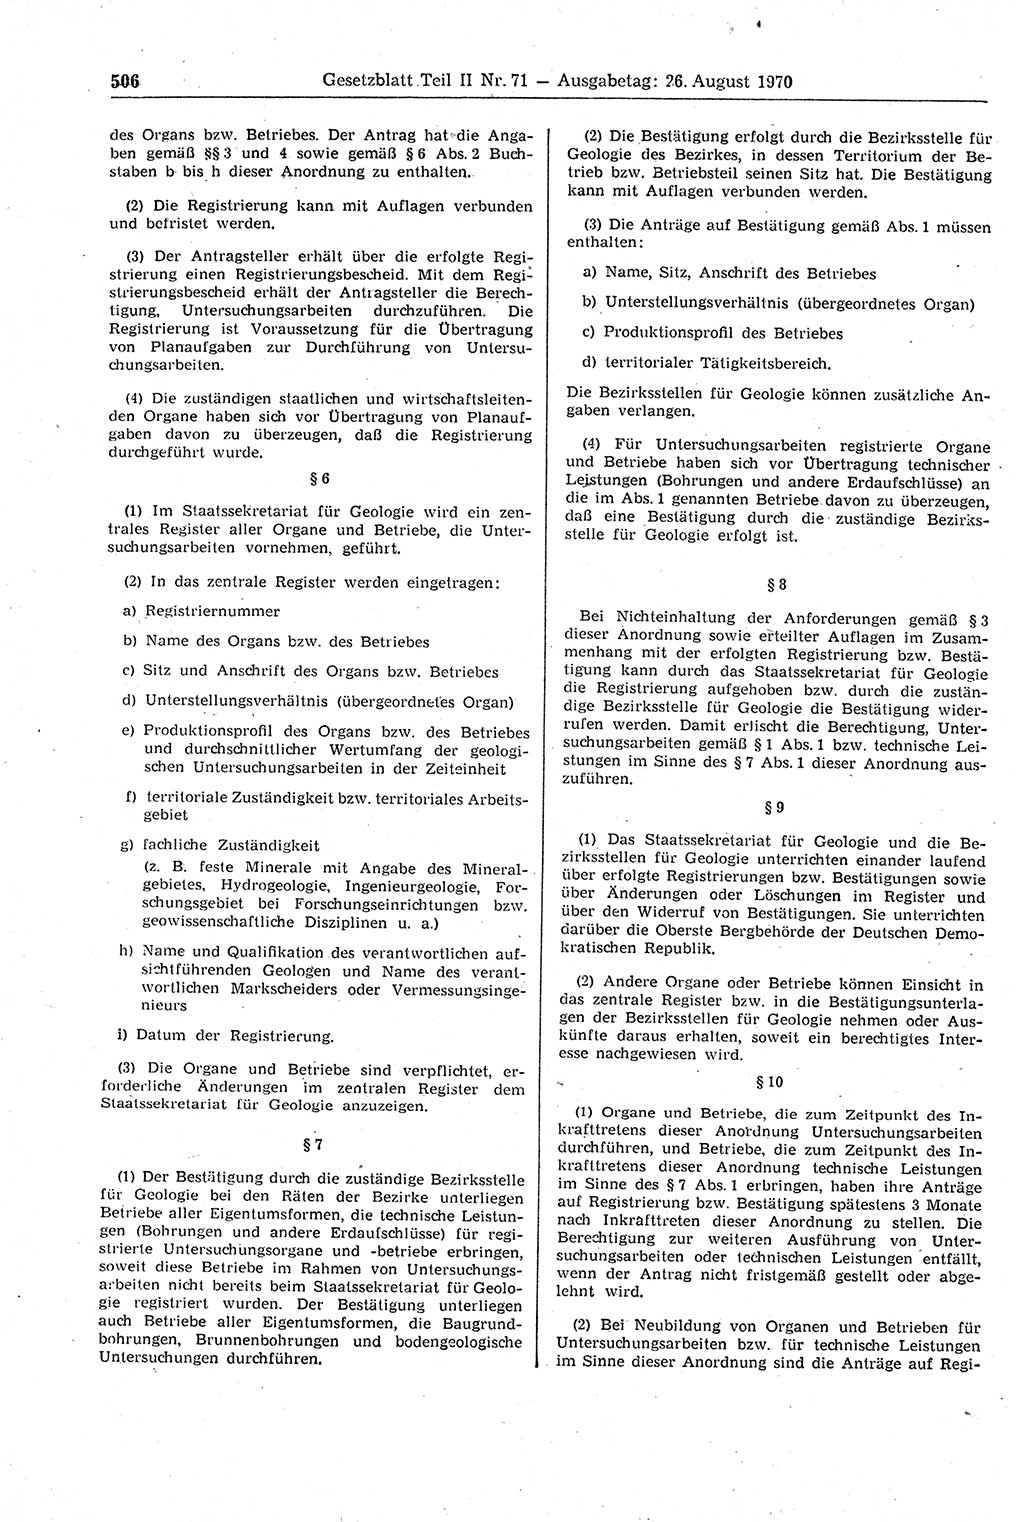 Gesetzblatt (GBl.) der Deutschen Demokratischen Republik (DDR) Teil ⅠⅠ 1970, Seite 506 (GBl. DDR ⅠⅠ 1970, S. 506)